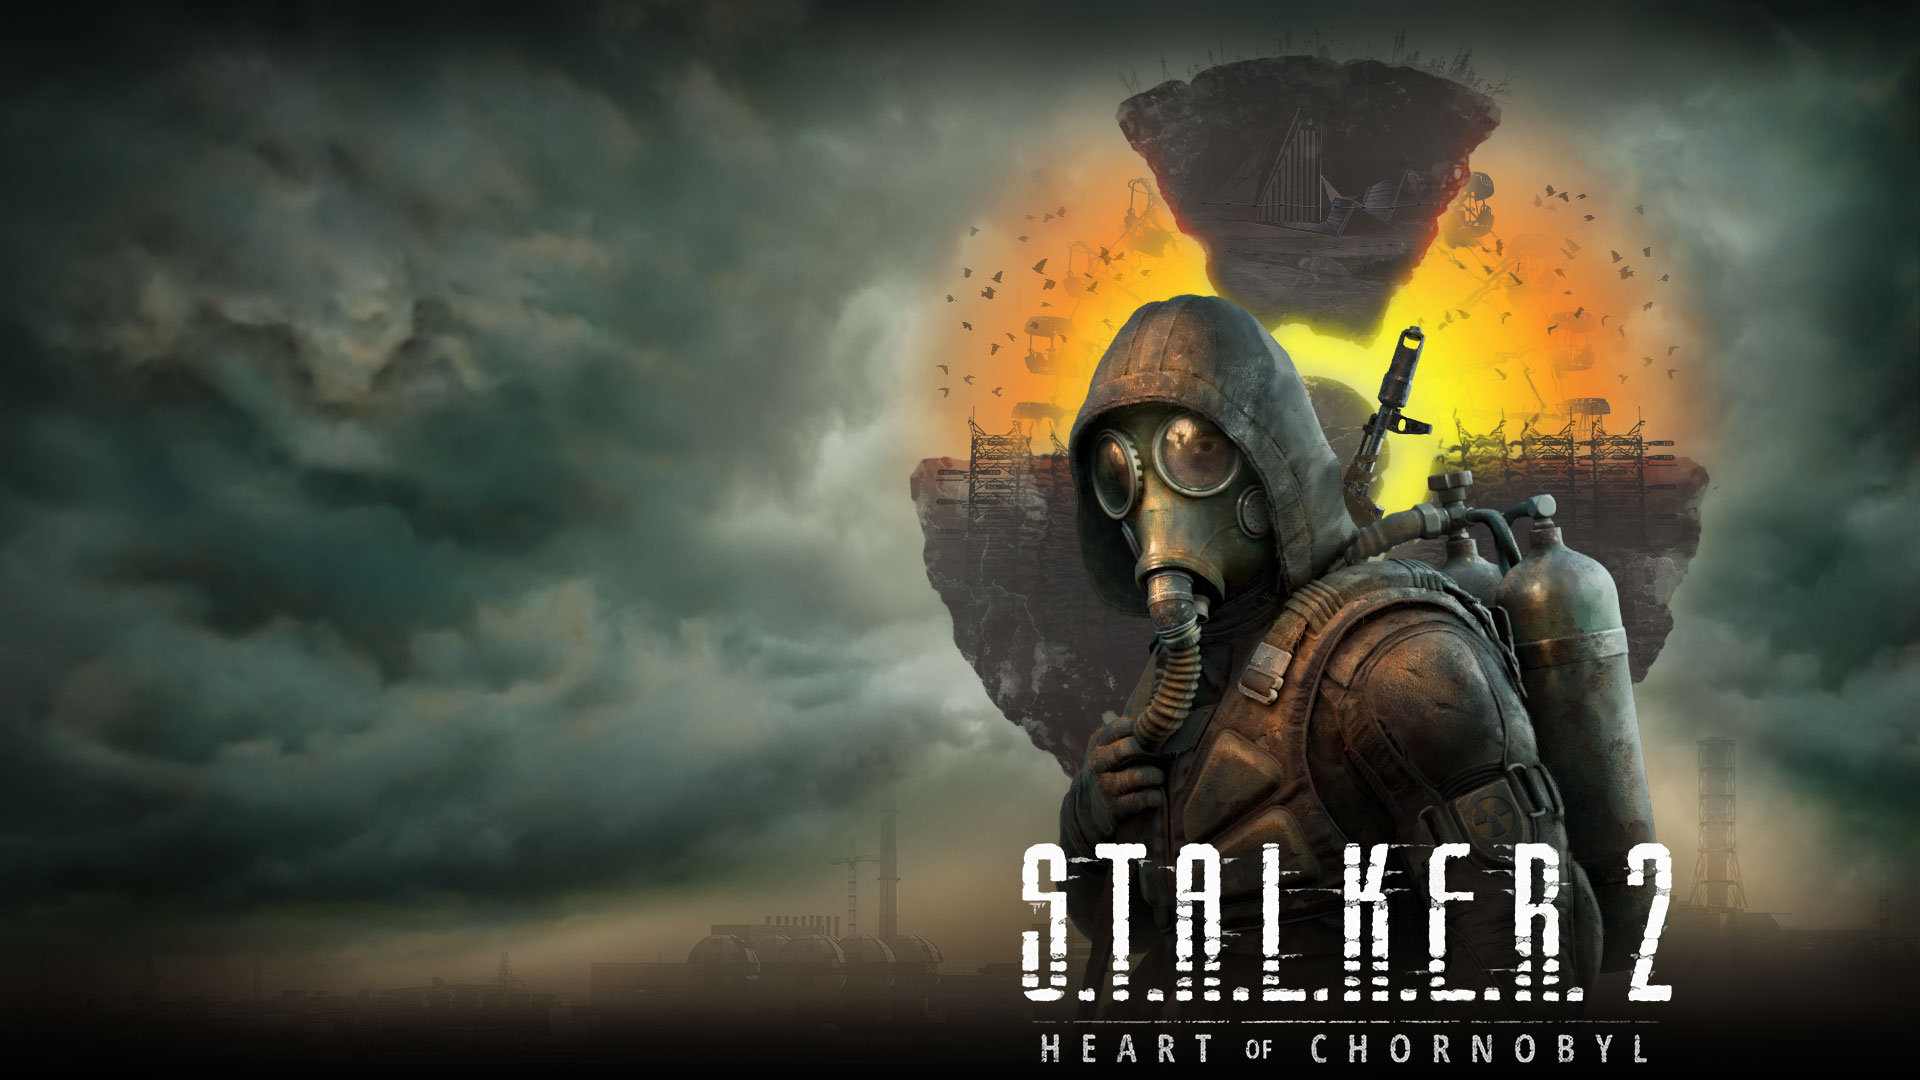 Stalker 2 Heart of Chornobyl, postać stoi przed unoszącym się krajobrazem z chmurami i dymem w powietrzu.